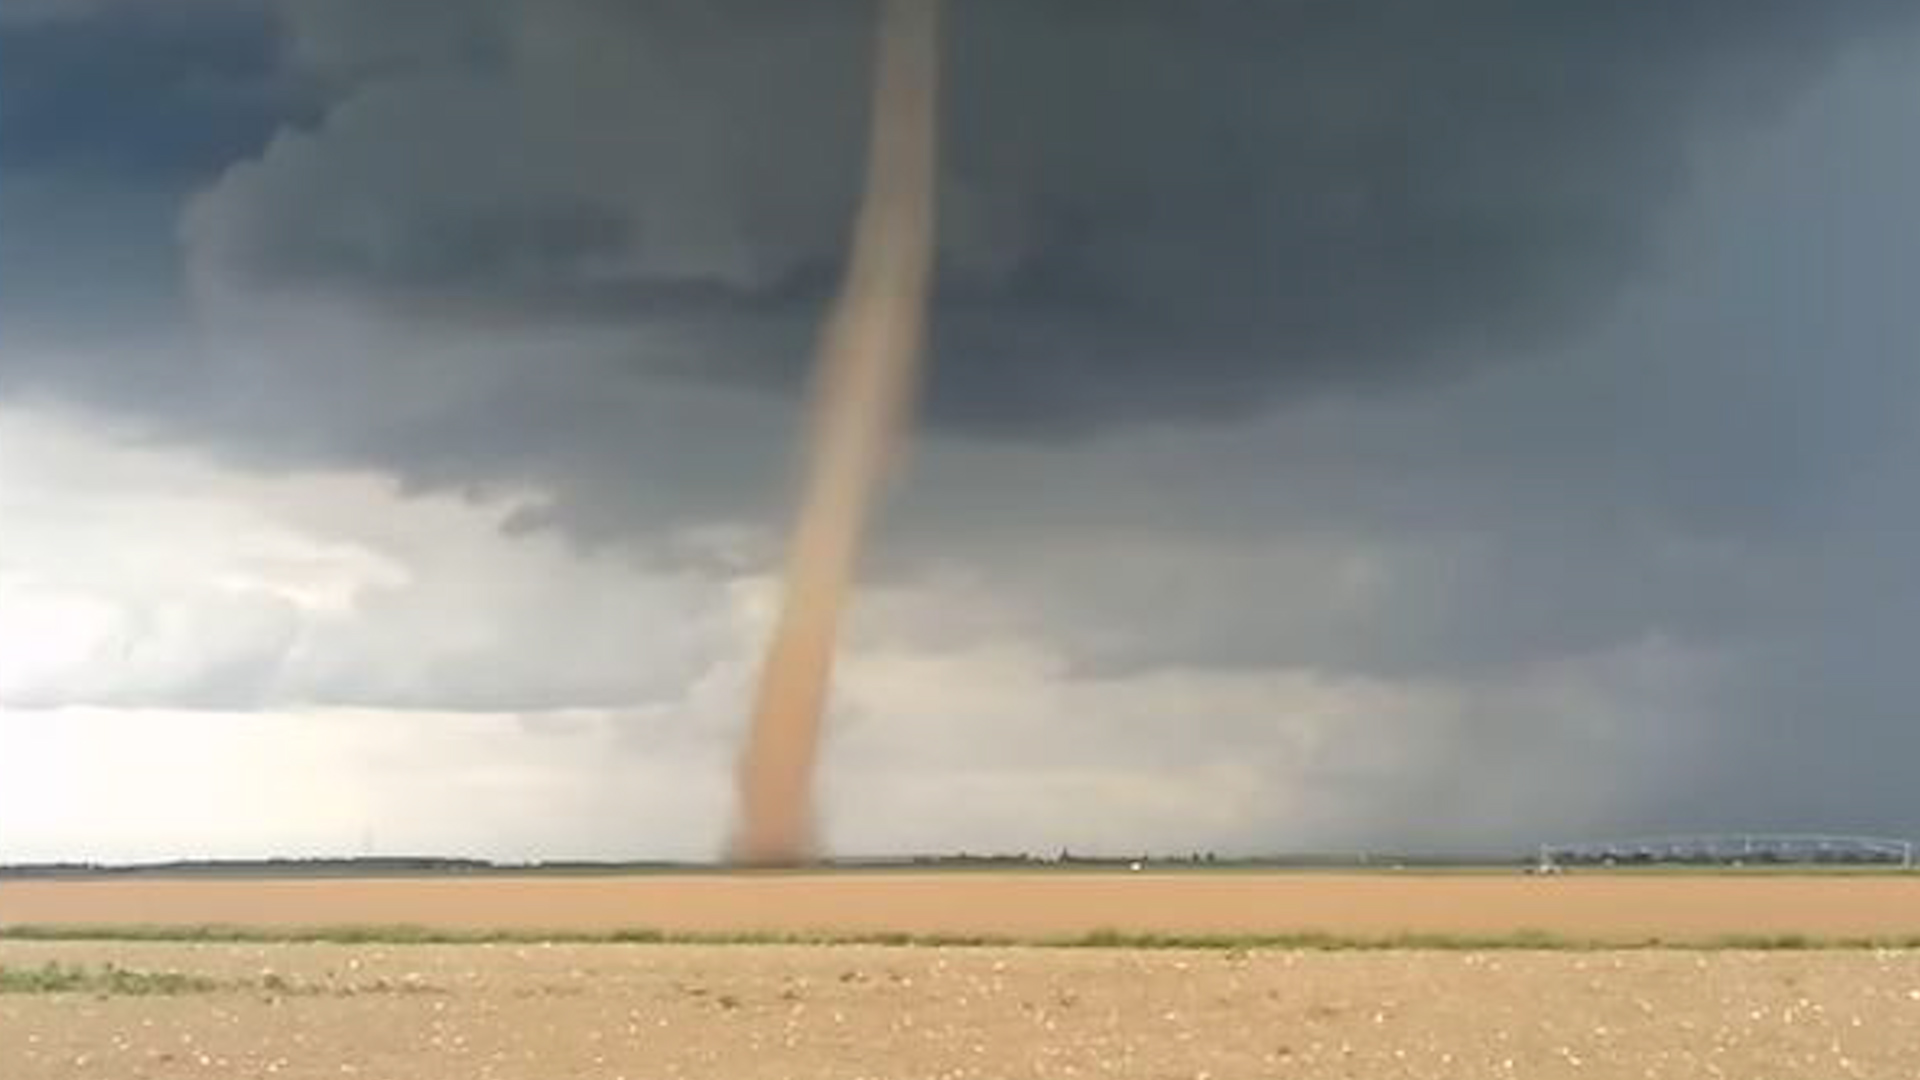 La tornade a parcouru au moins 800 mètres à travers les champs, sans toucher d'habitation. Météo Centre-Val de Loire/Cédric Desroziers